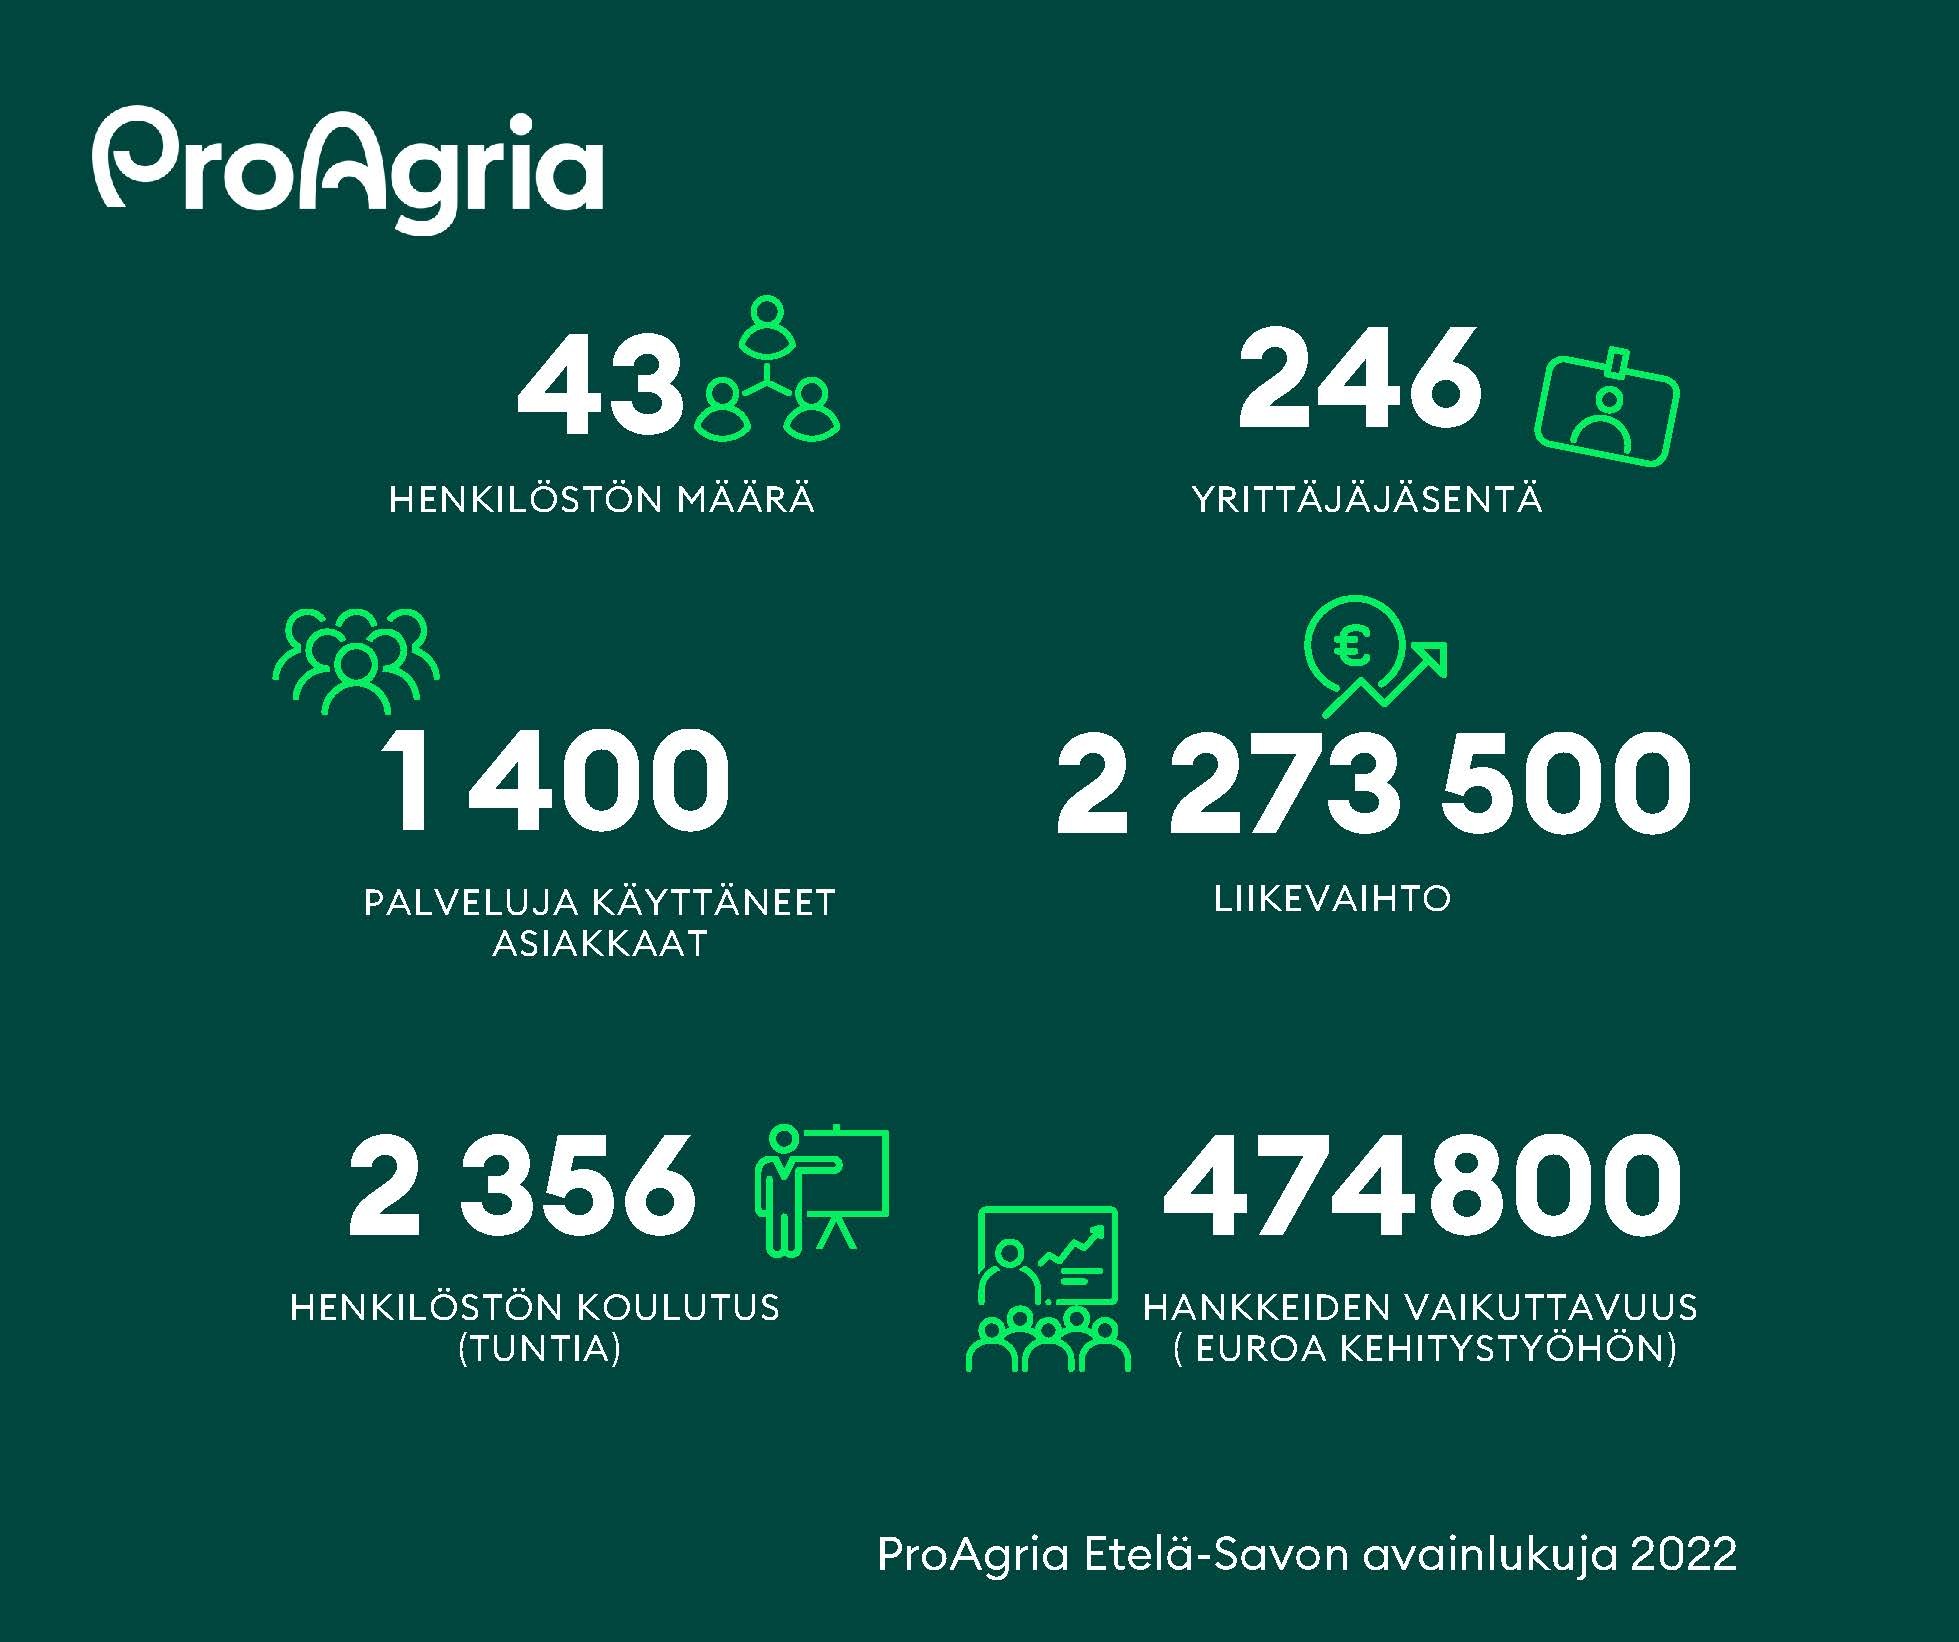 ProAgria Etelä-Savon avainlukuja 2022